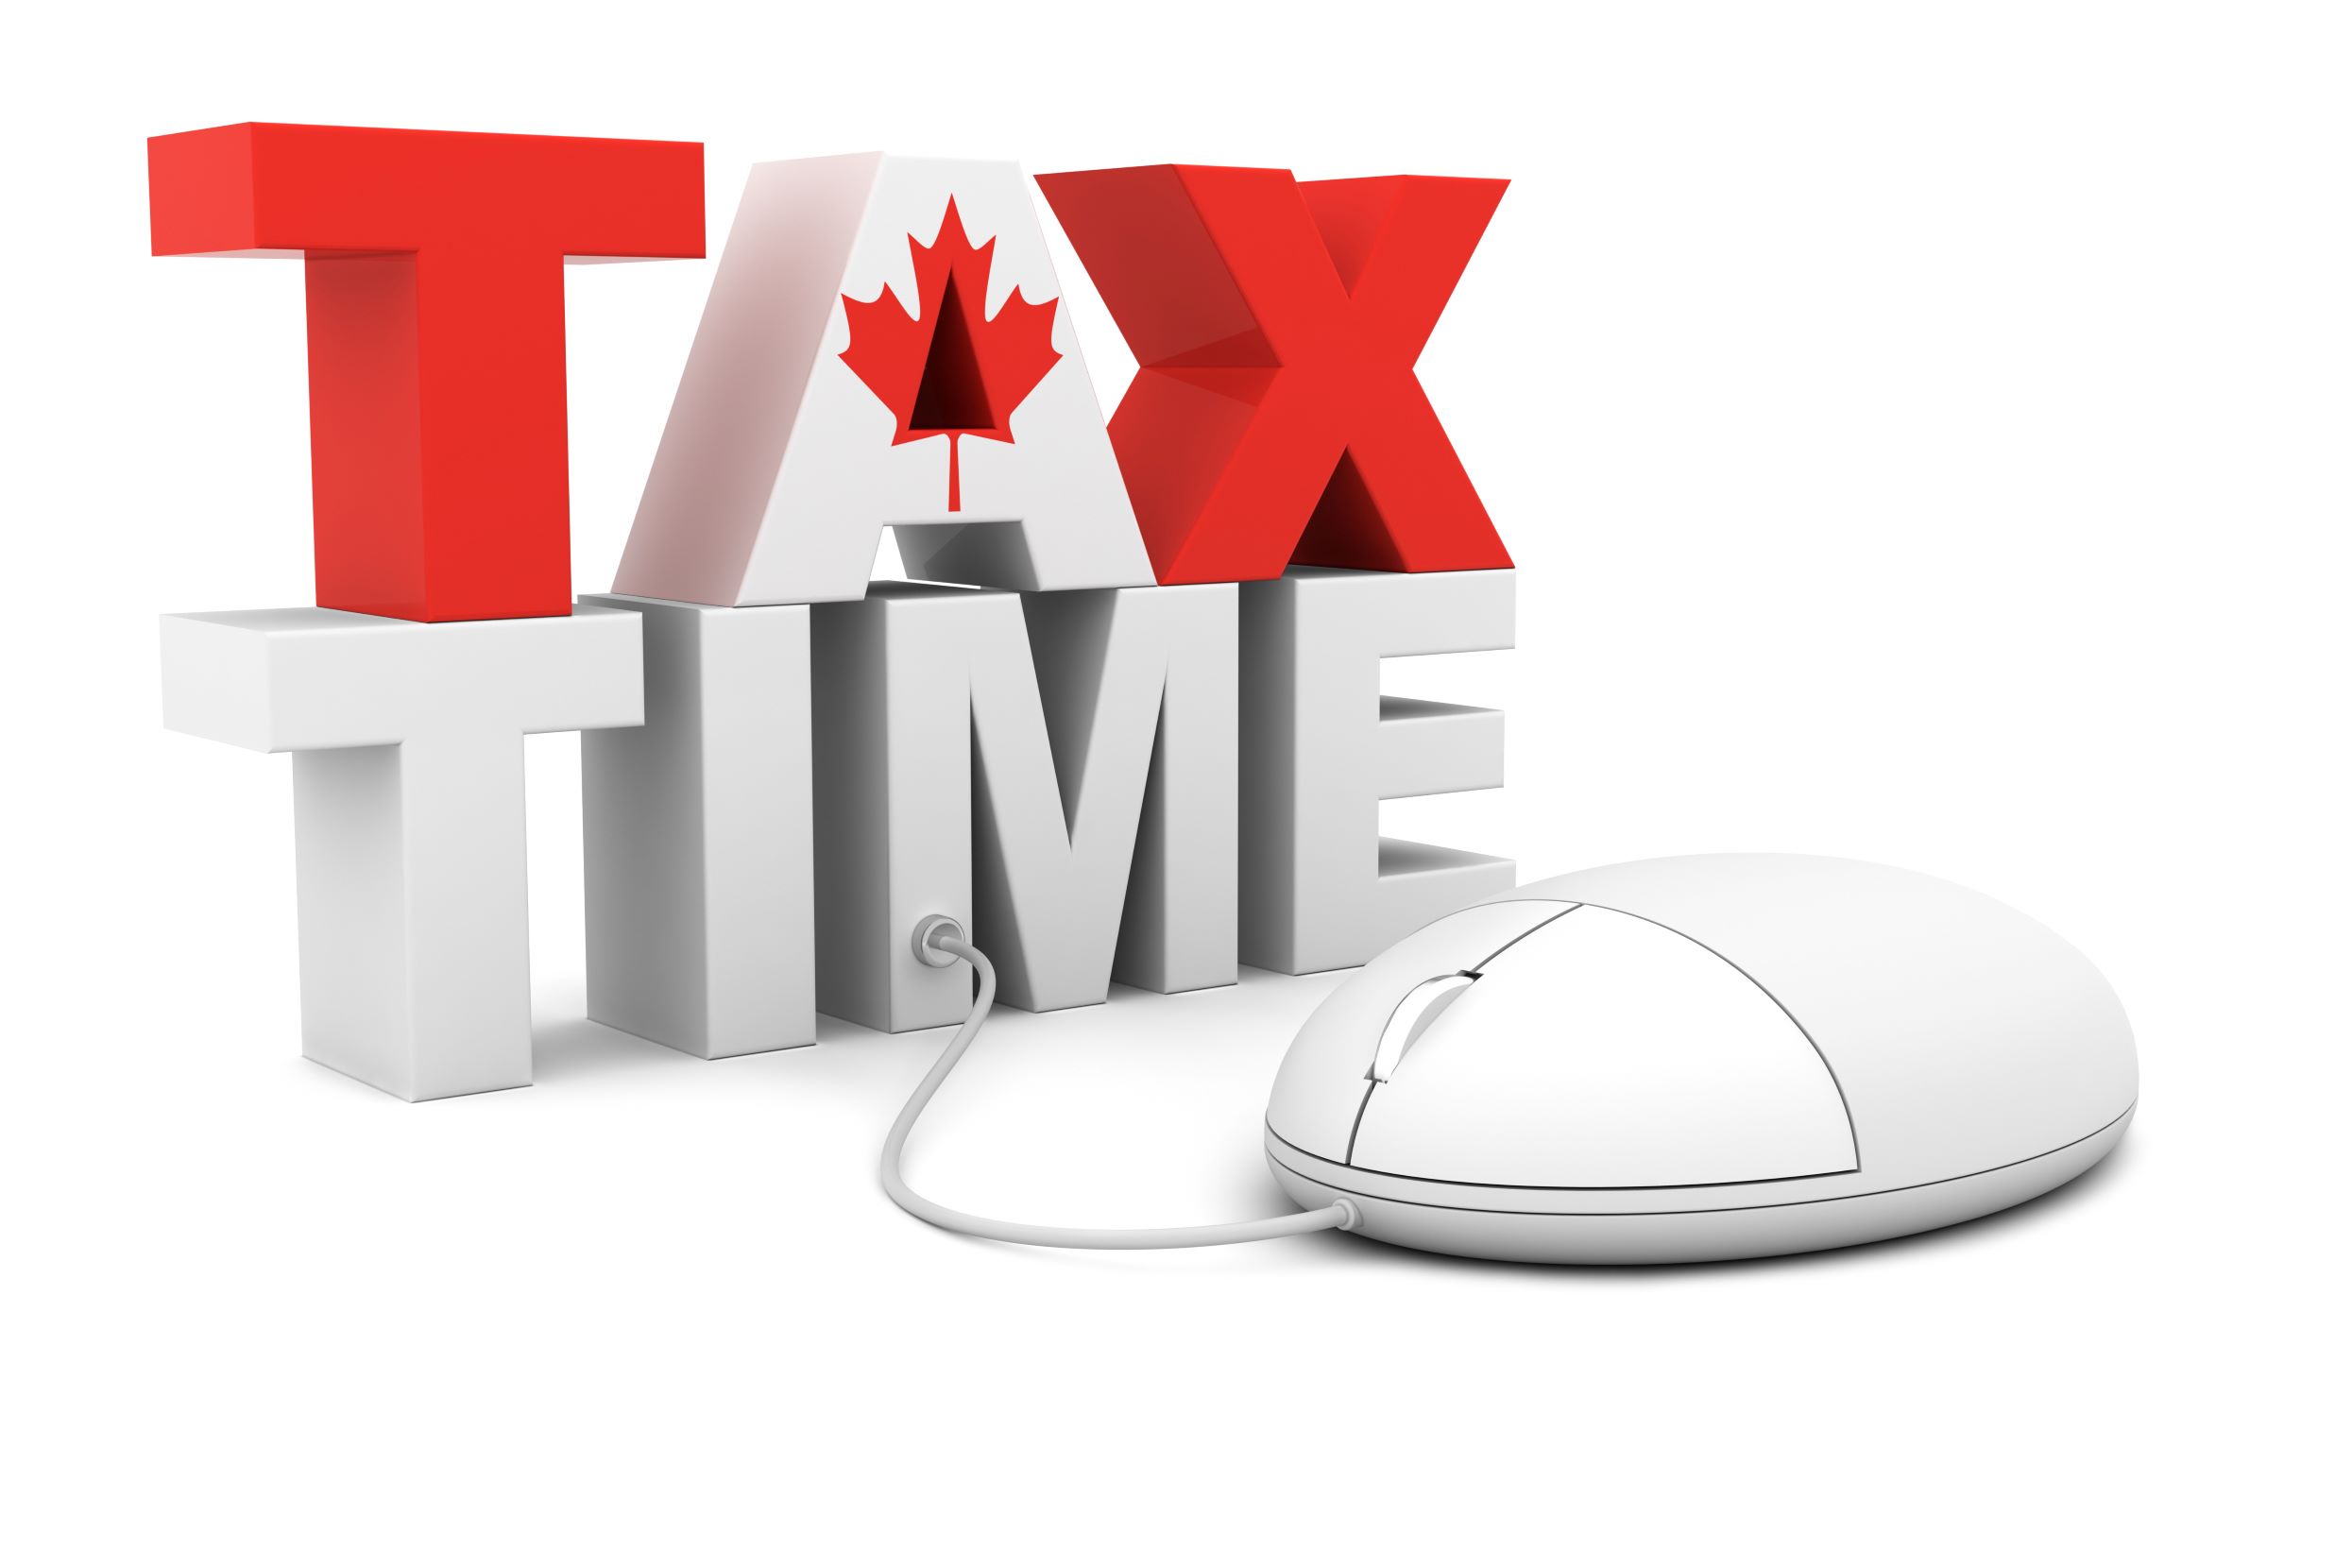 Tax time